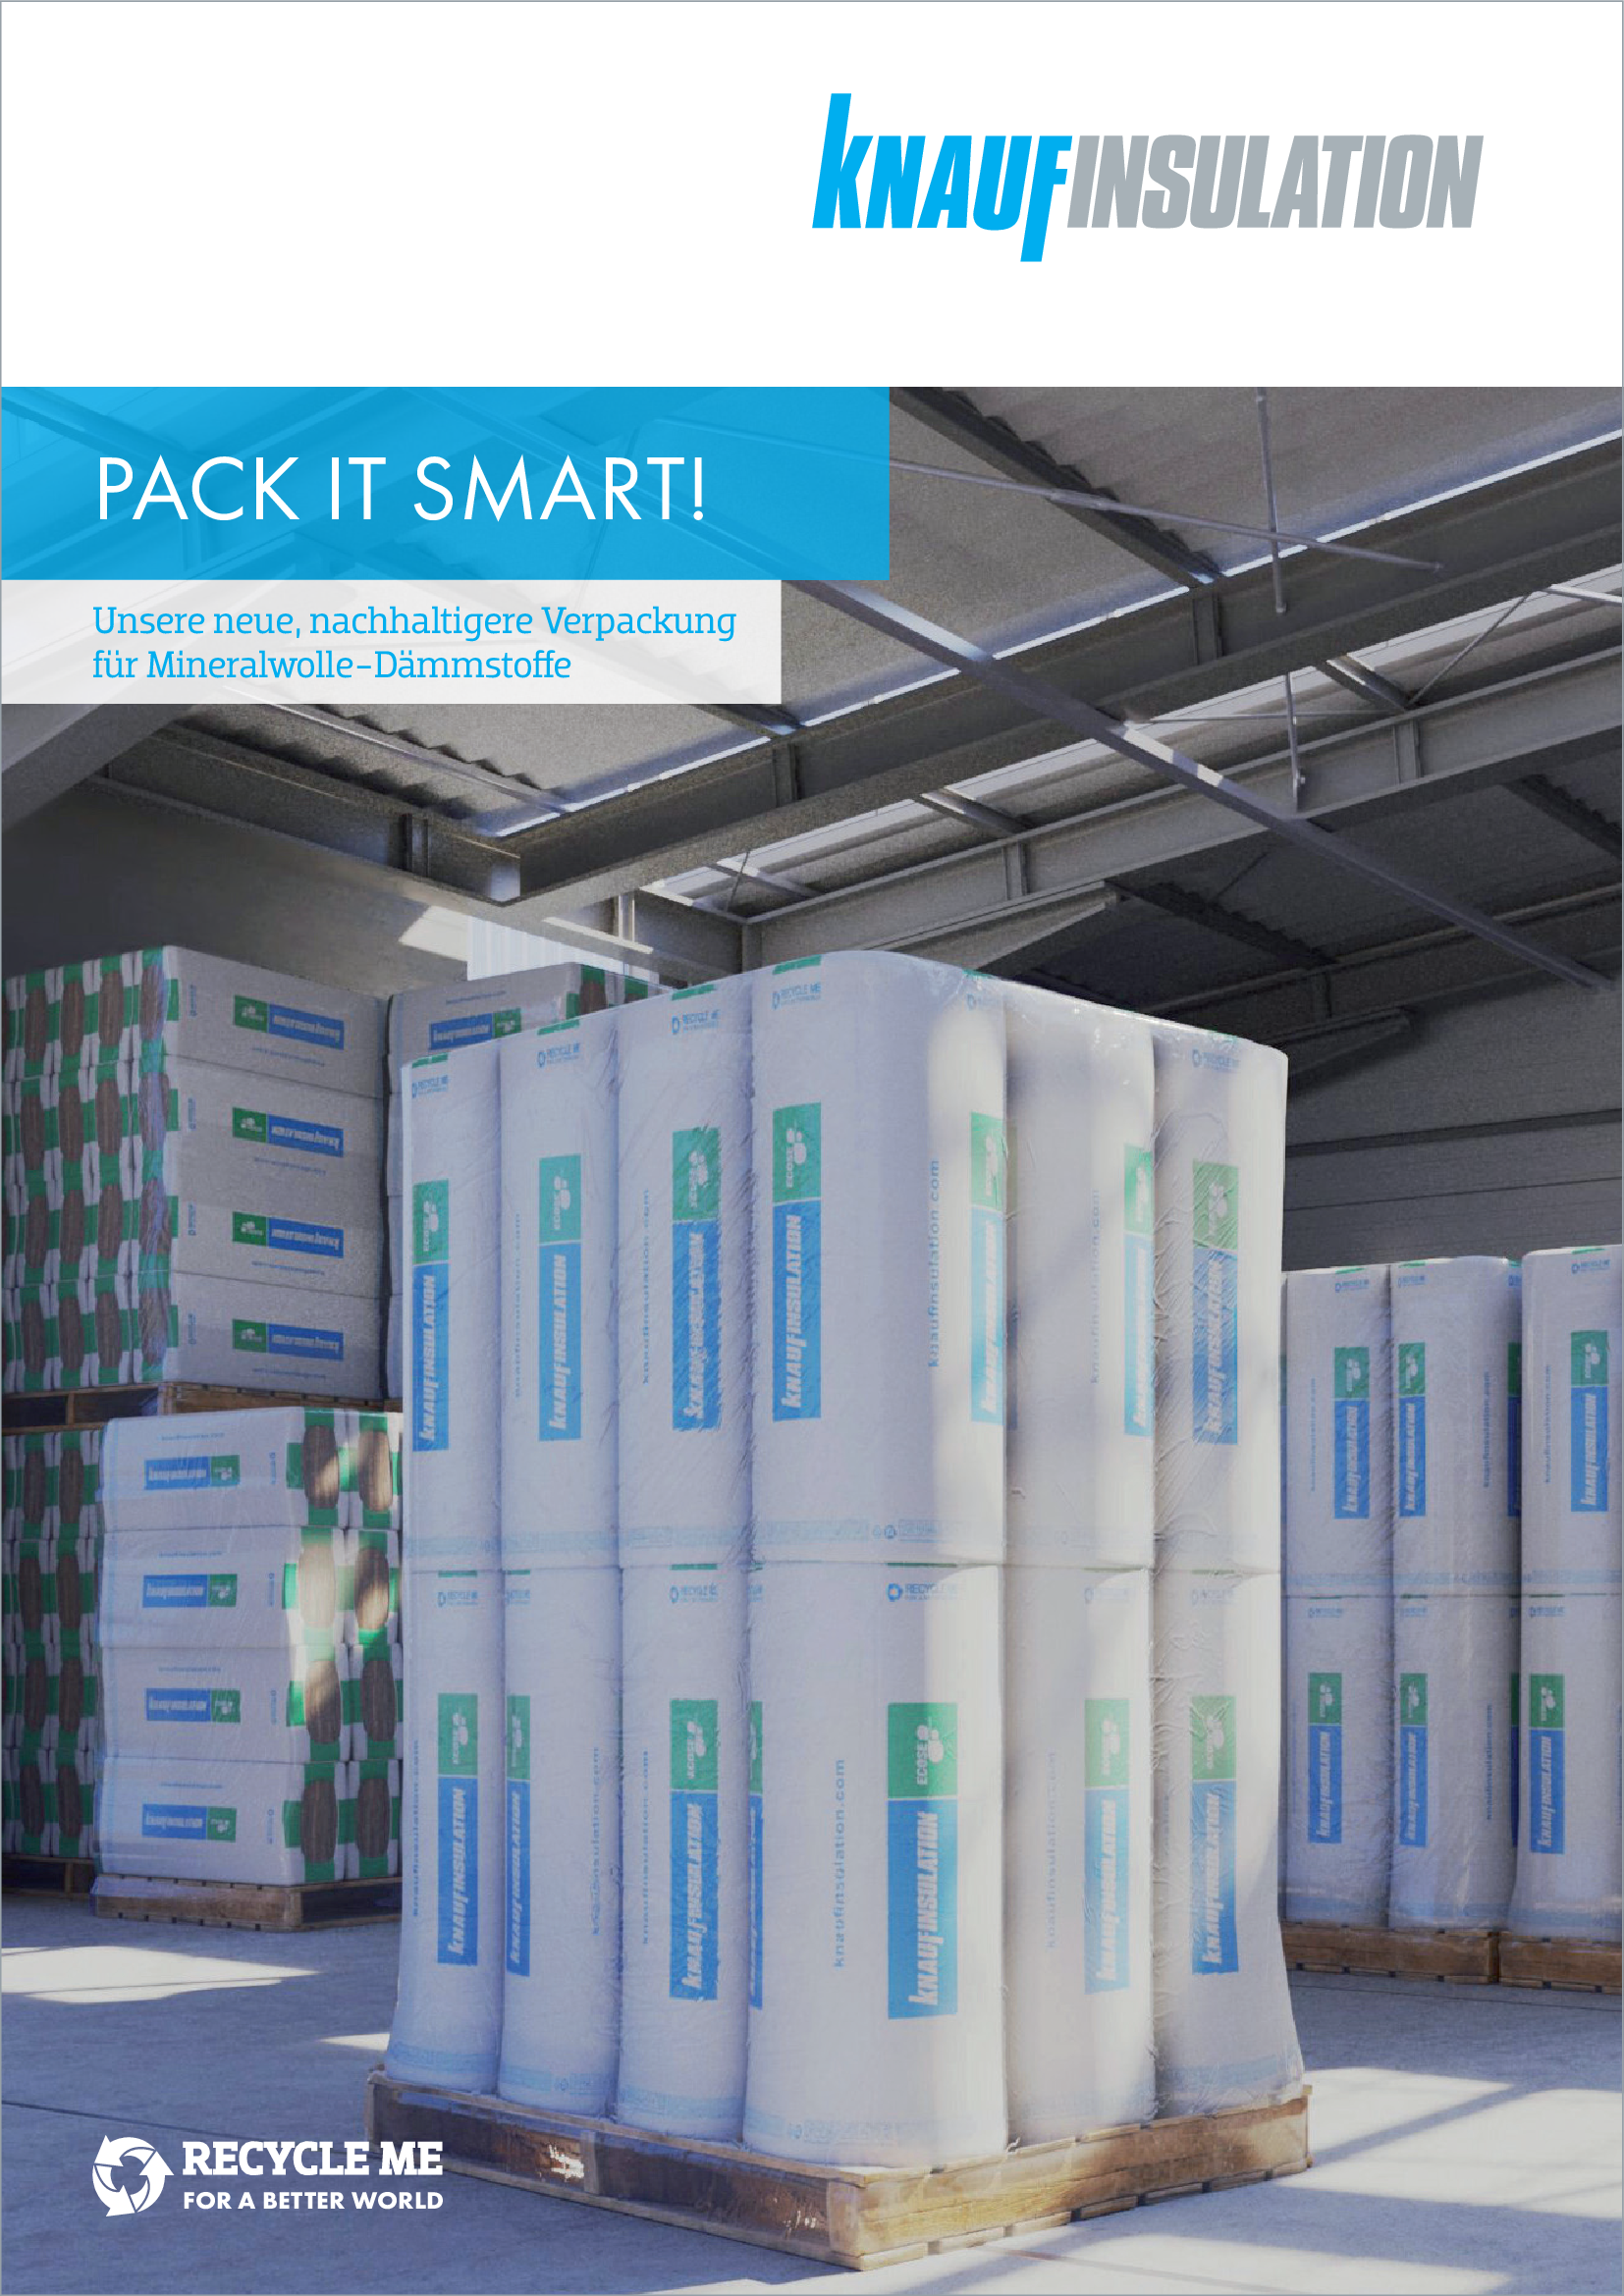 Pack it smart, unsere neue, nachhaltigere Verpackung für Mineralwolle-Dämmstoffe